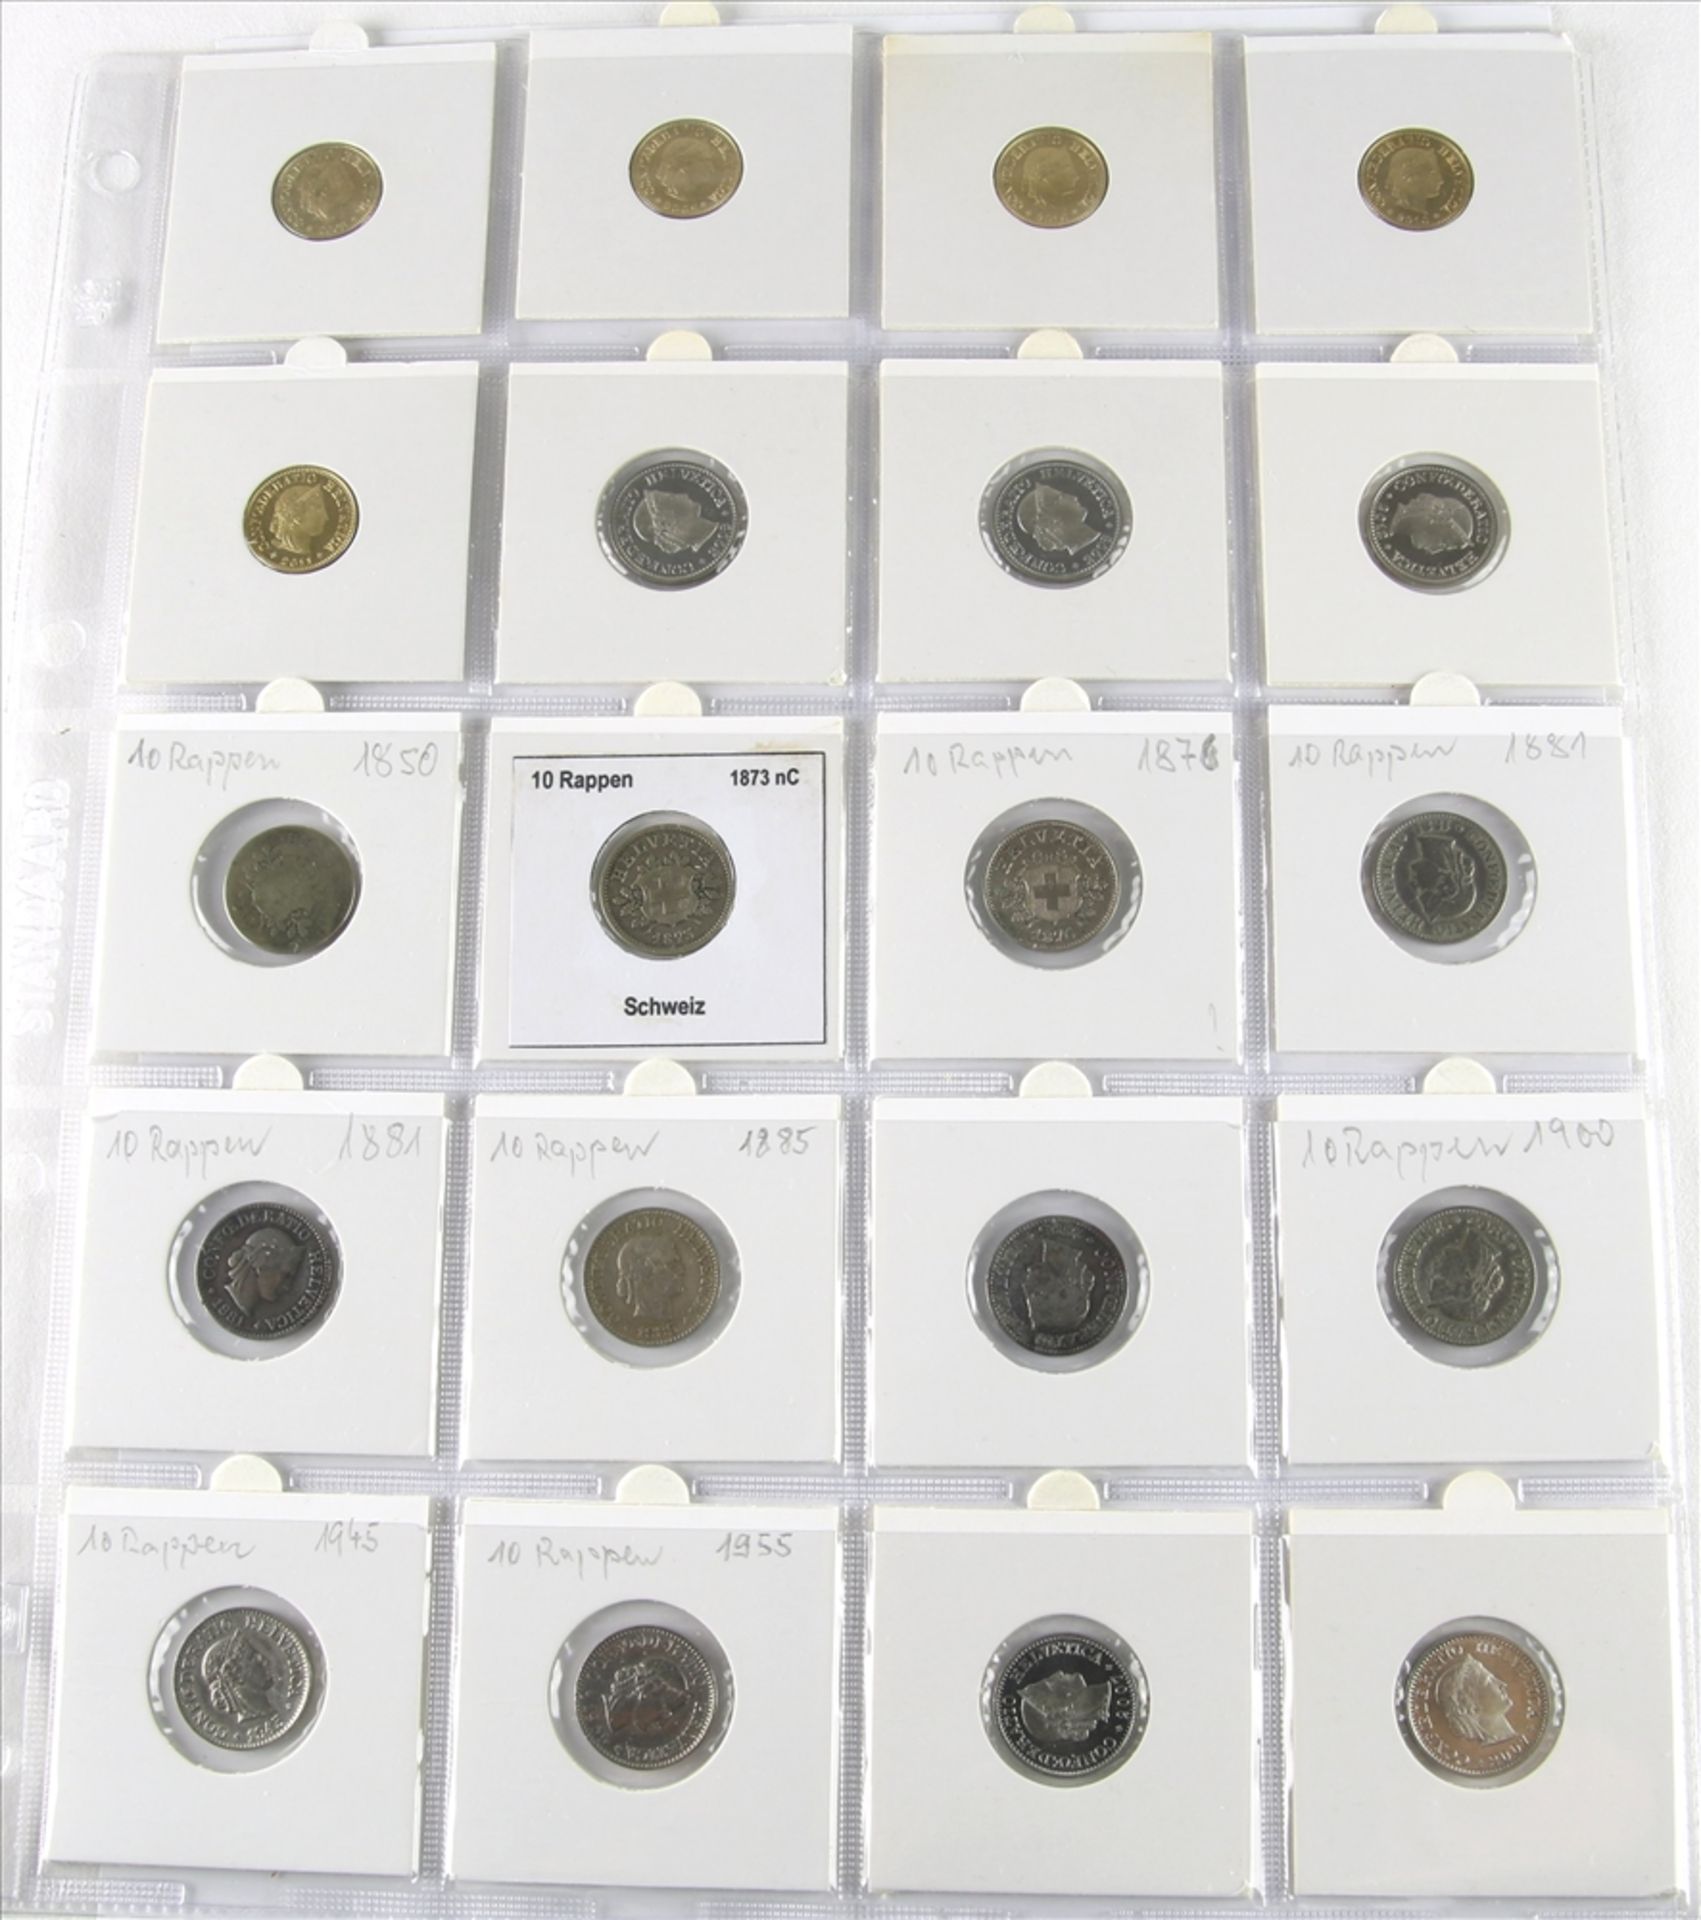 20 Münzen Schweiz Meist 10 Rappen. Unterschiedliche Nominale, Jahrgänge und Zustände. Von